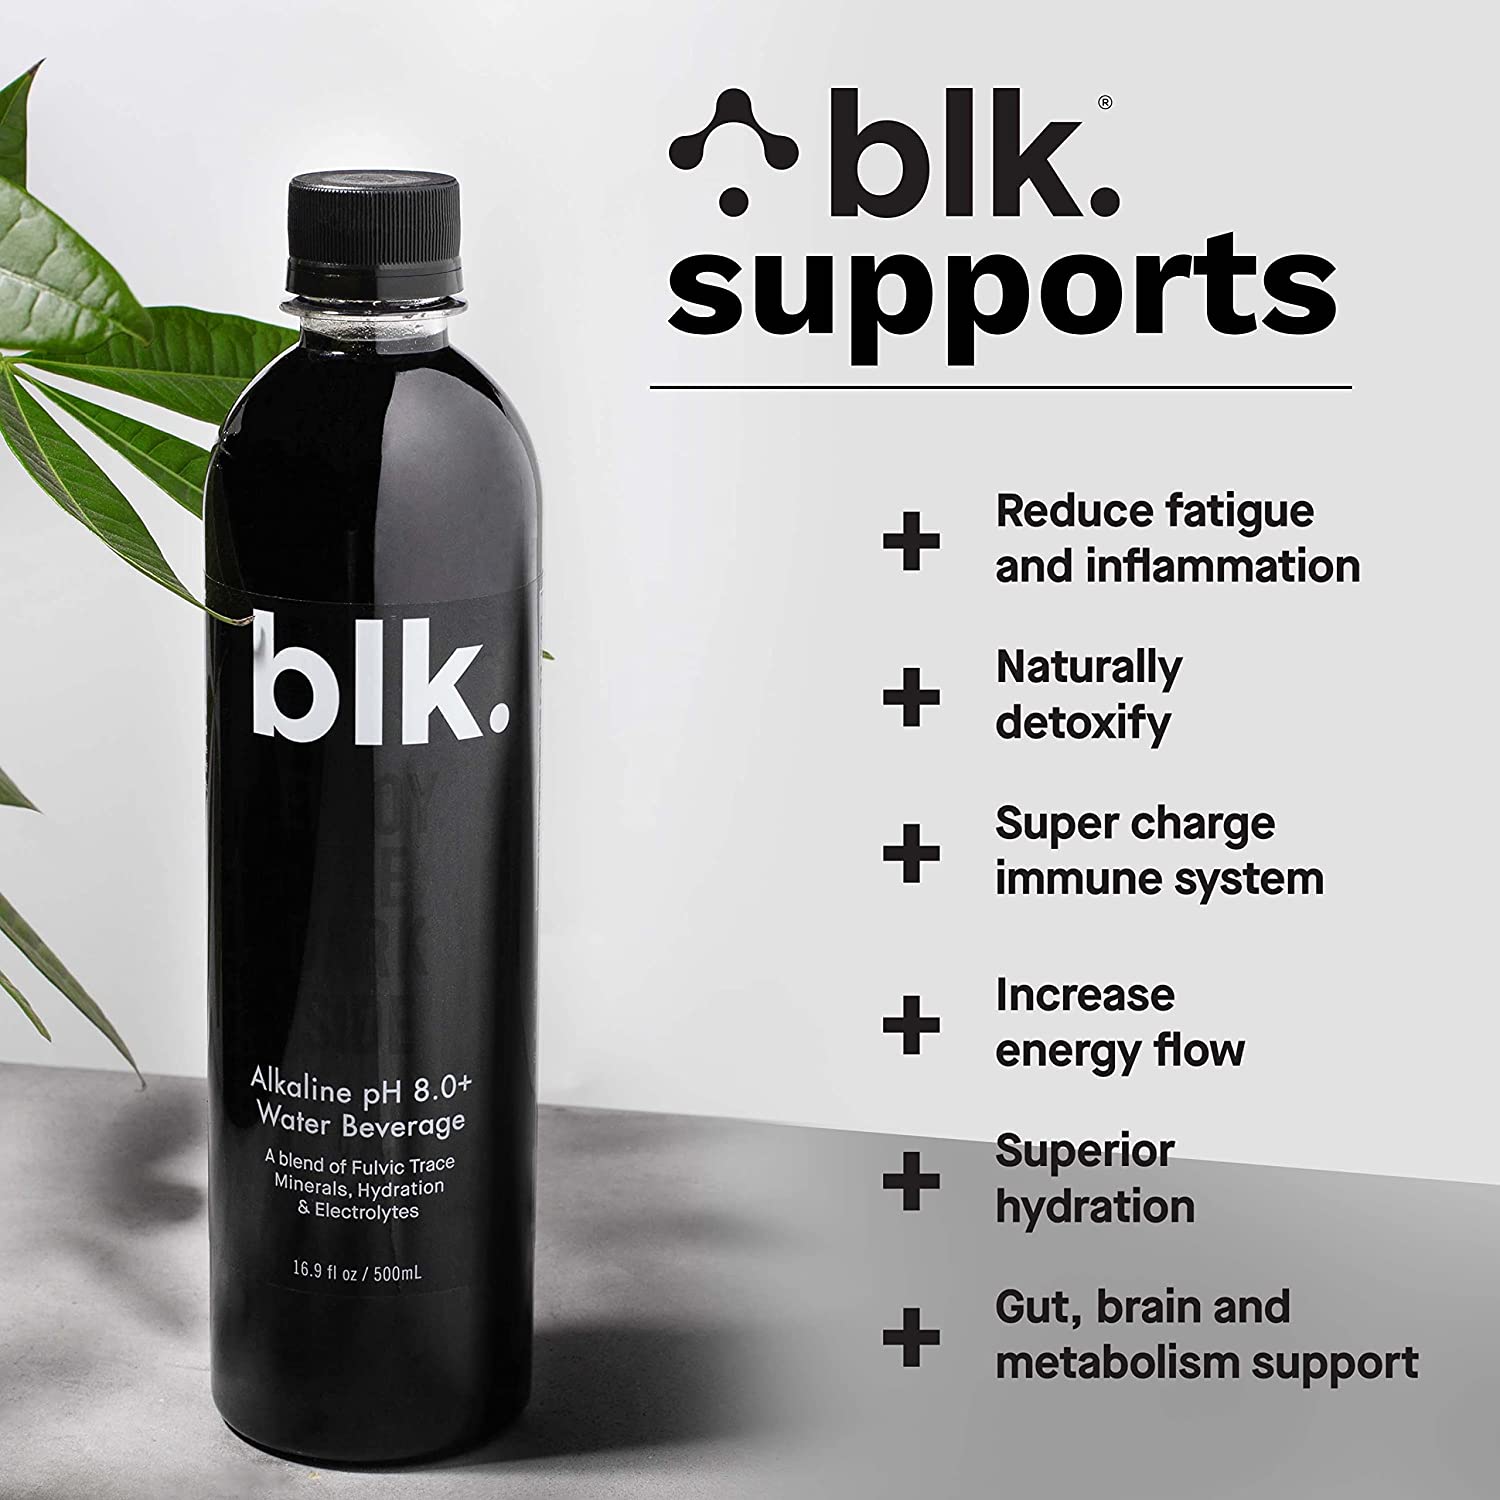 Blk water (Black Alkaline water), 12 x 500ml bottles, BLK. Supports, Water beverages, SNS Health